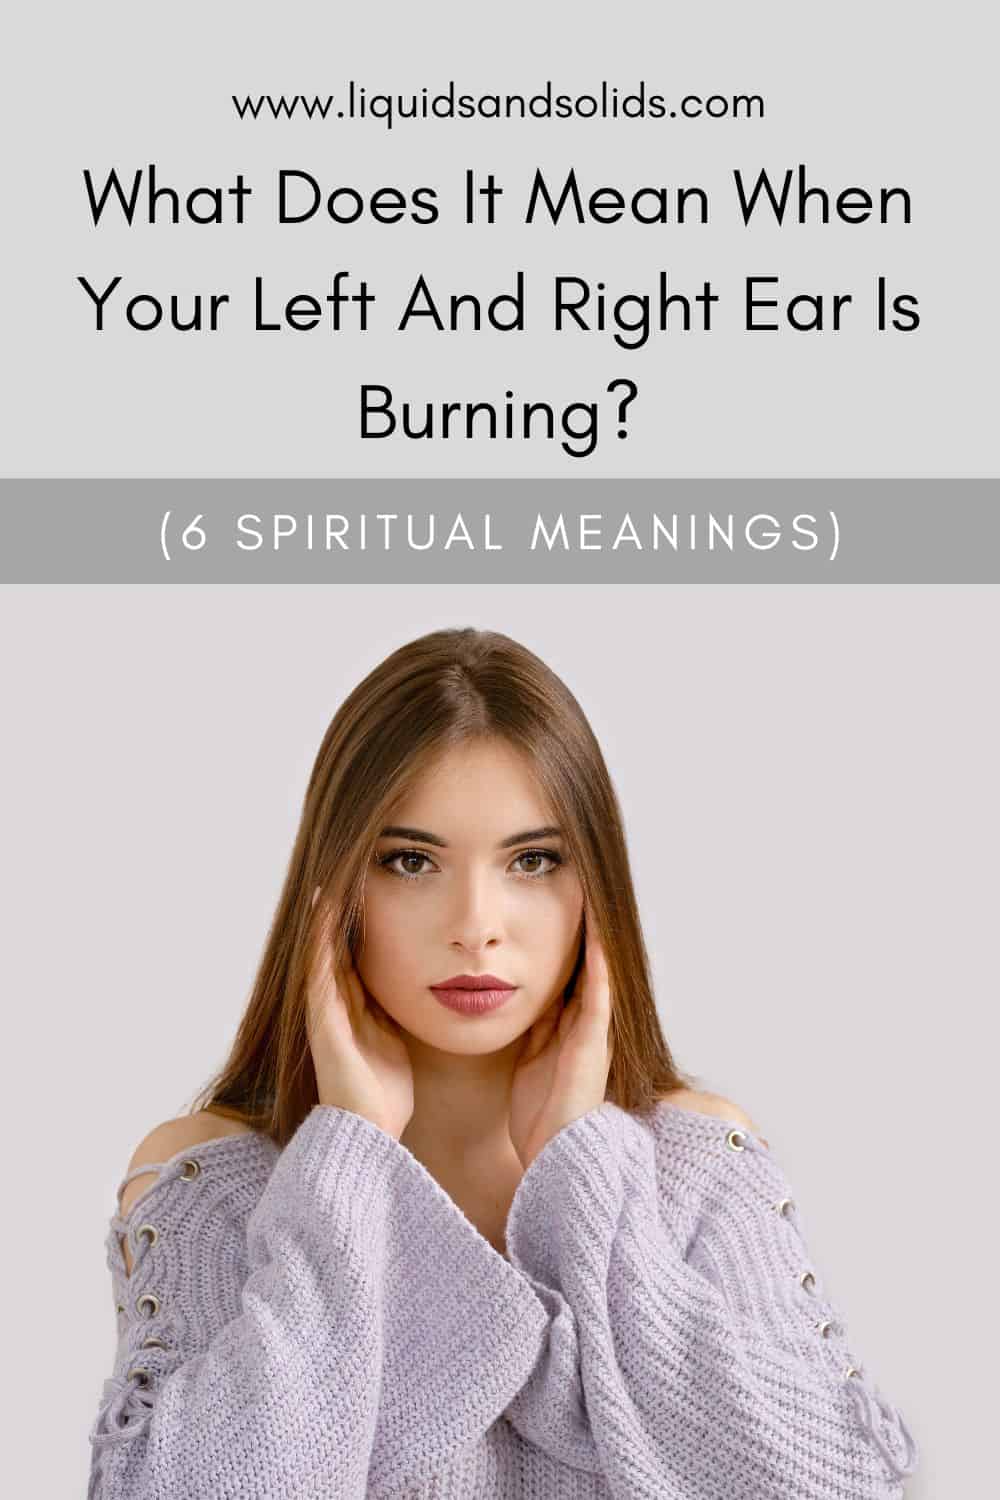  Hvad betyder det, når dit højre og venstre øre brænder? (6 spirituelle betydninger)